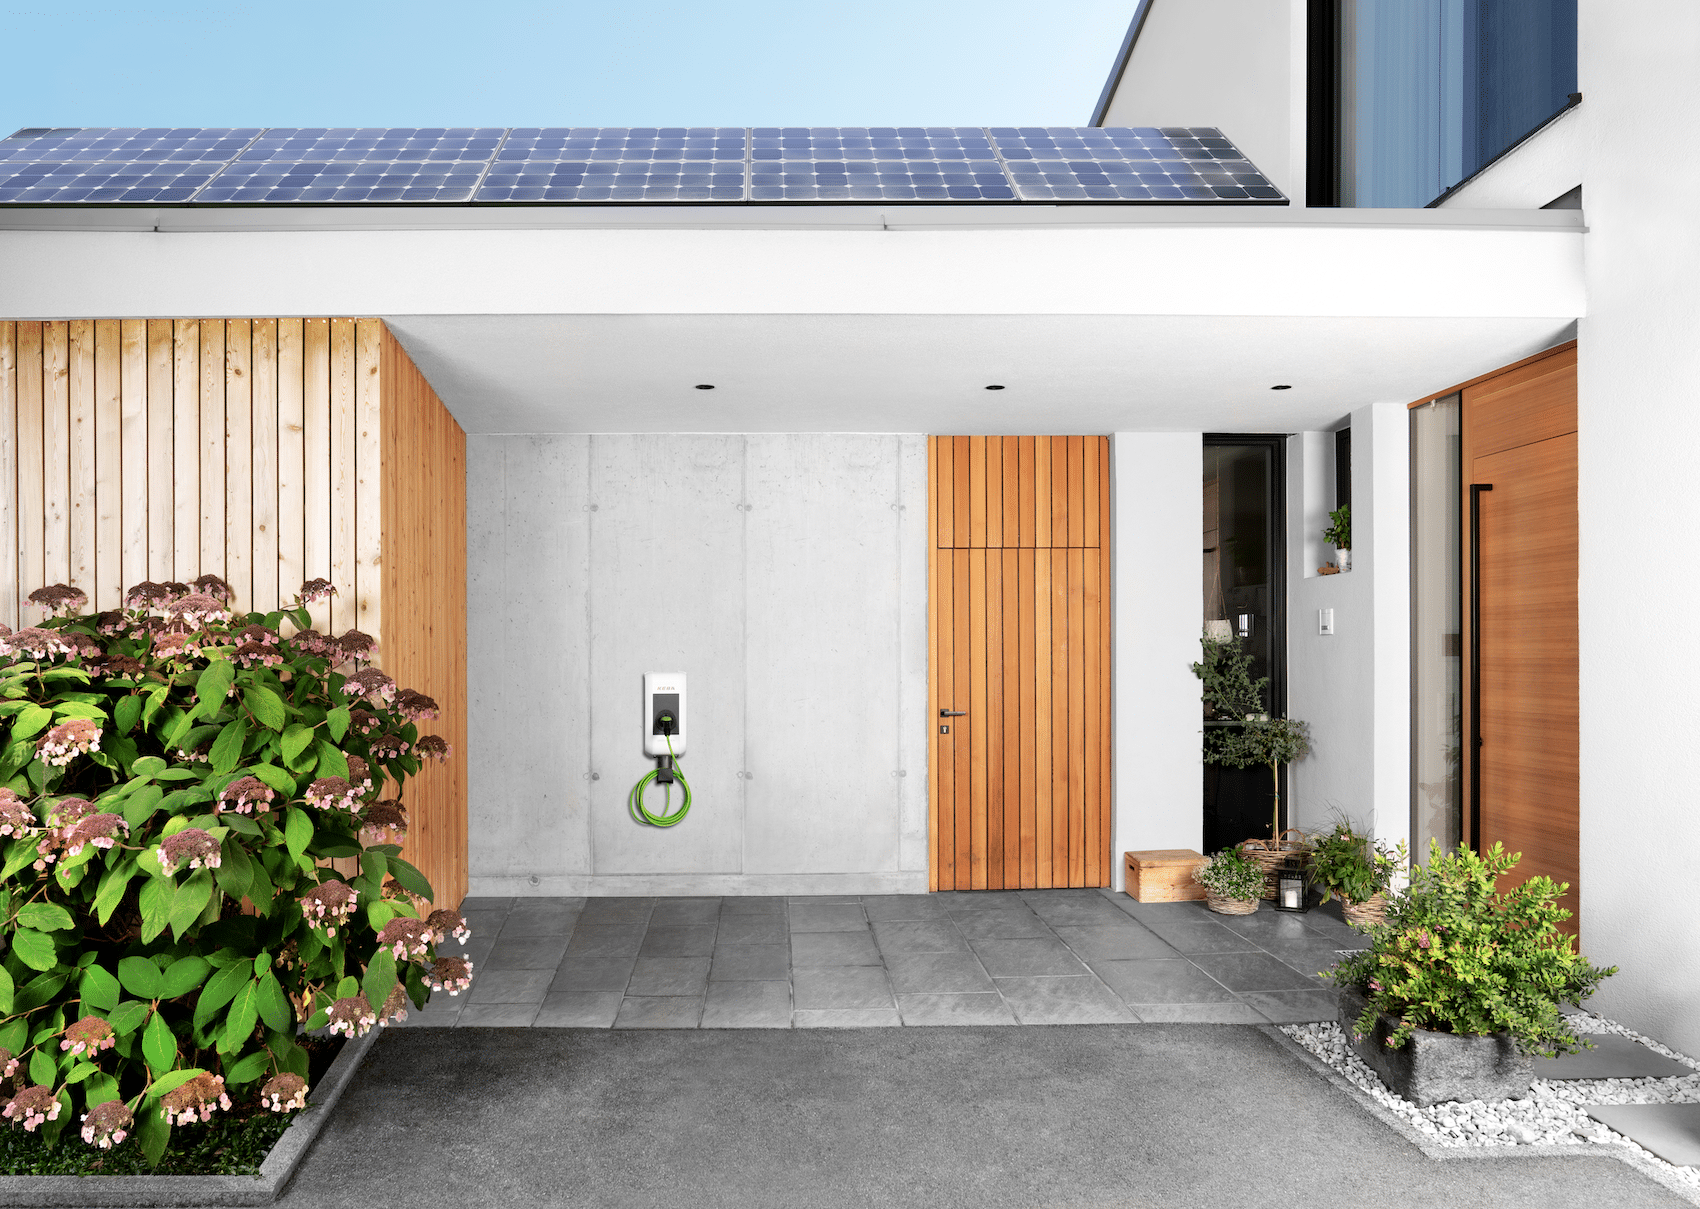 KEBA zeigt eine Wallbox-Lösung für Elektroautos, mit wenig Platzbedarf, wie in diesem Eingangsbereich mit einer Holztüre und einer Photovoltaikanlage auf dem Dach.